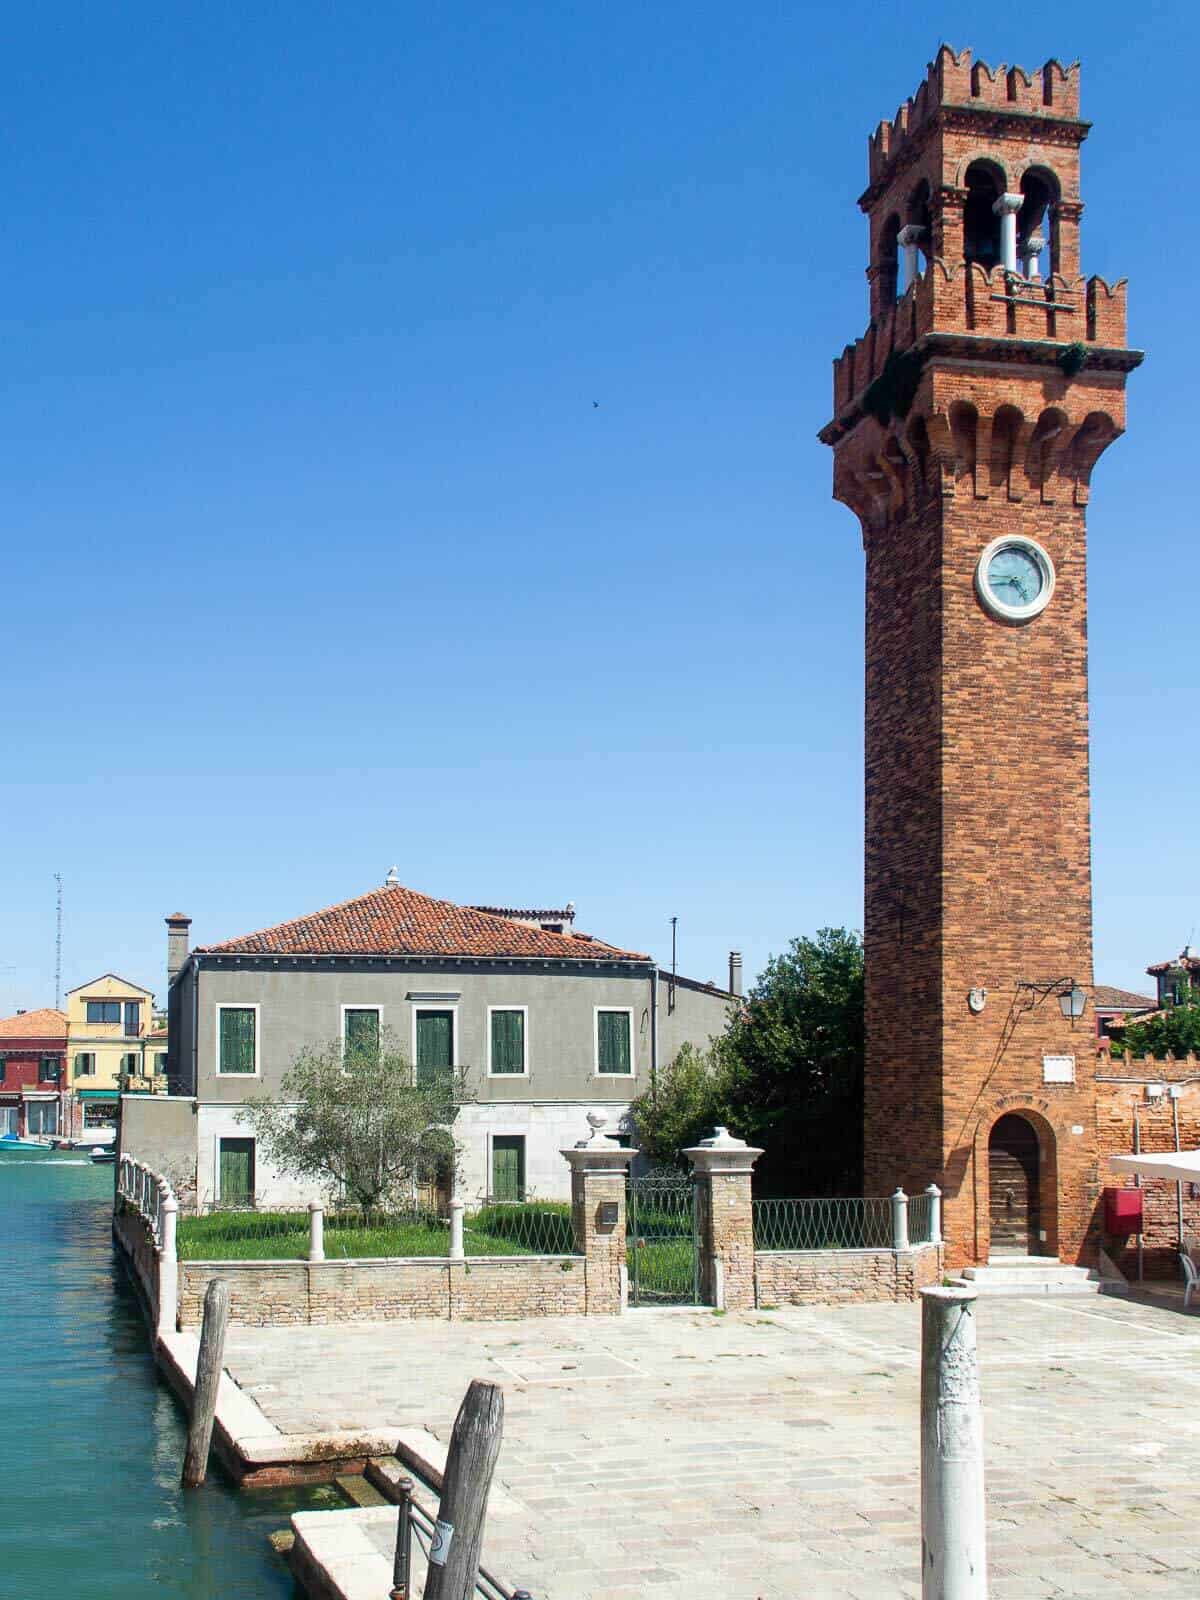 Tower in Murano